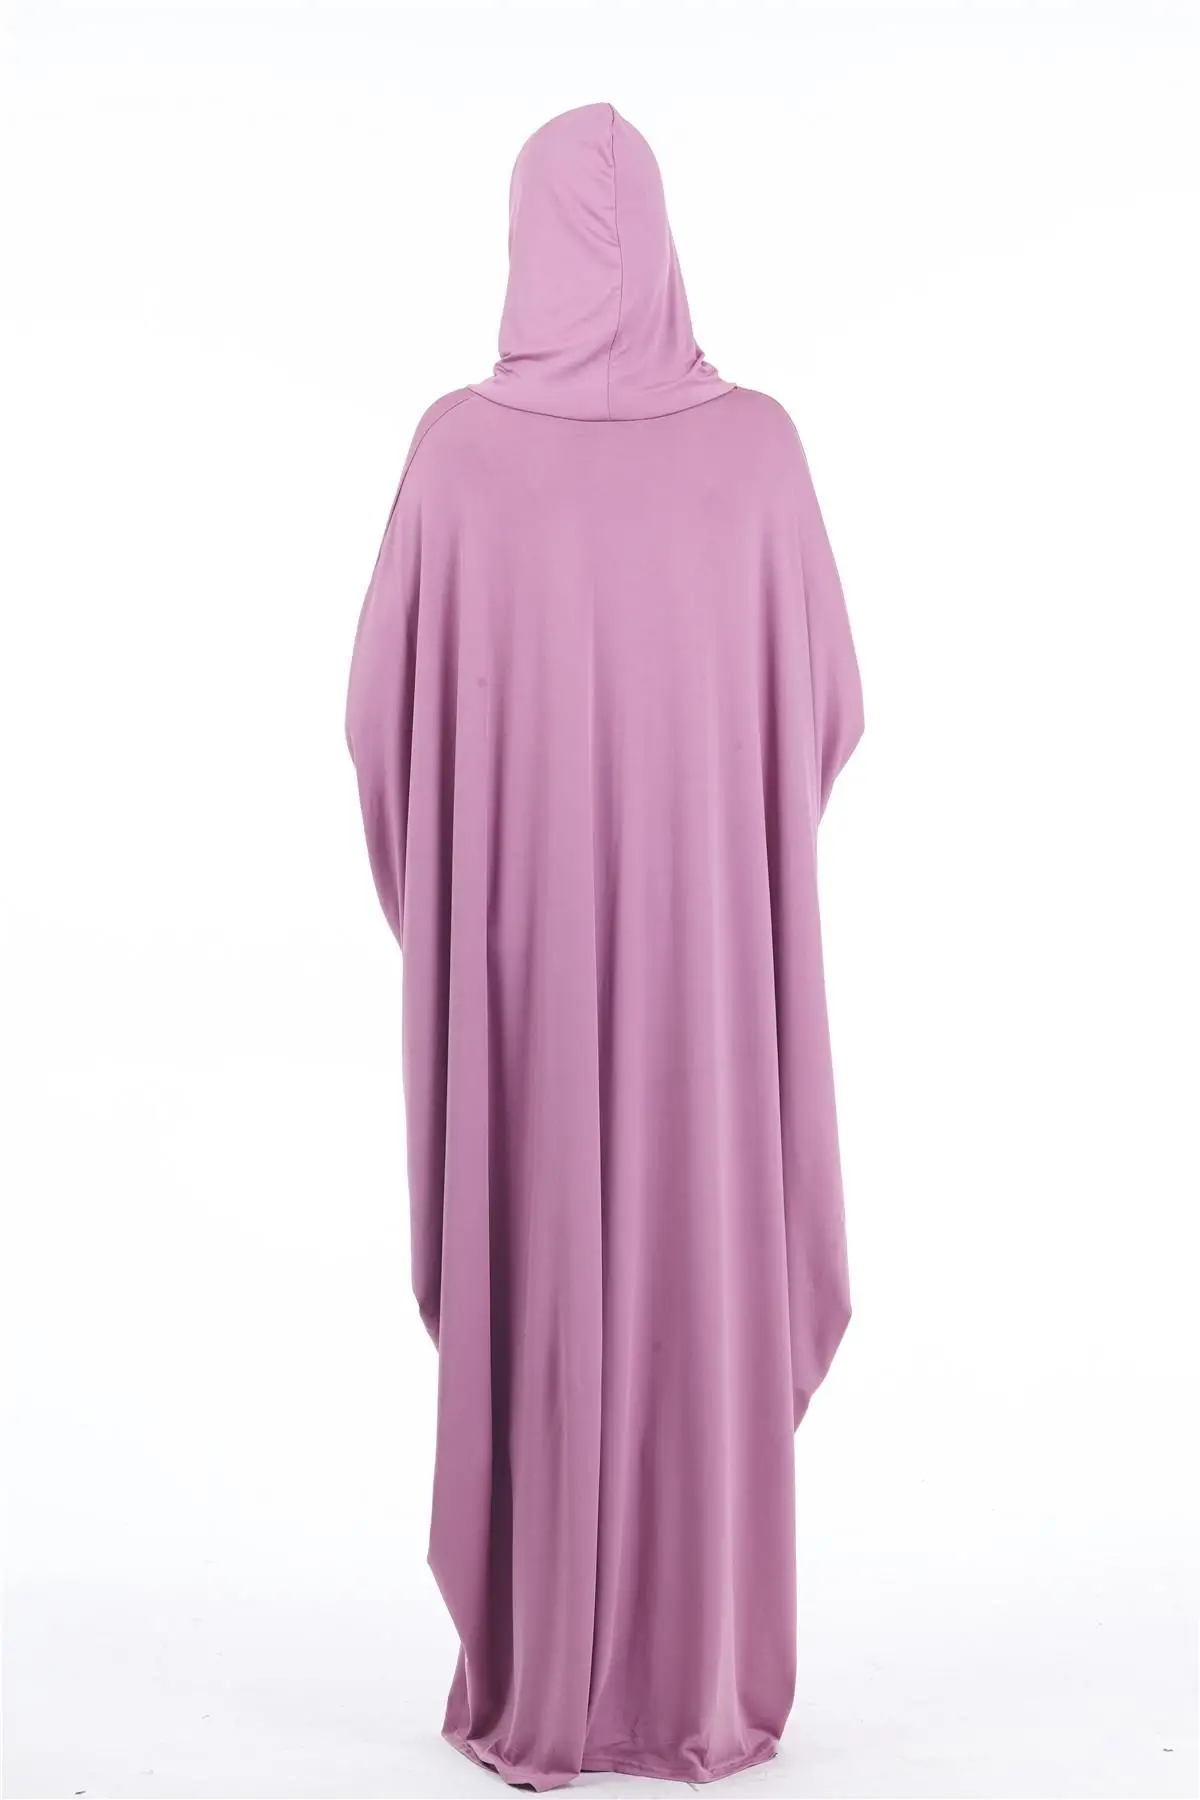 Мусульманские женщины полное покрытие молитва одежды хиджаб Длинное Макси платье абайя, кафтан халат над головой арабский Средневосточный Макси-платье ислам одежды